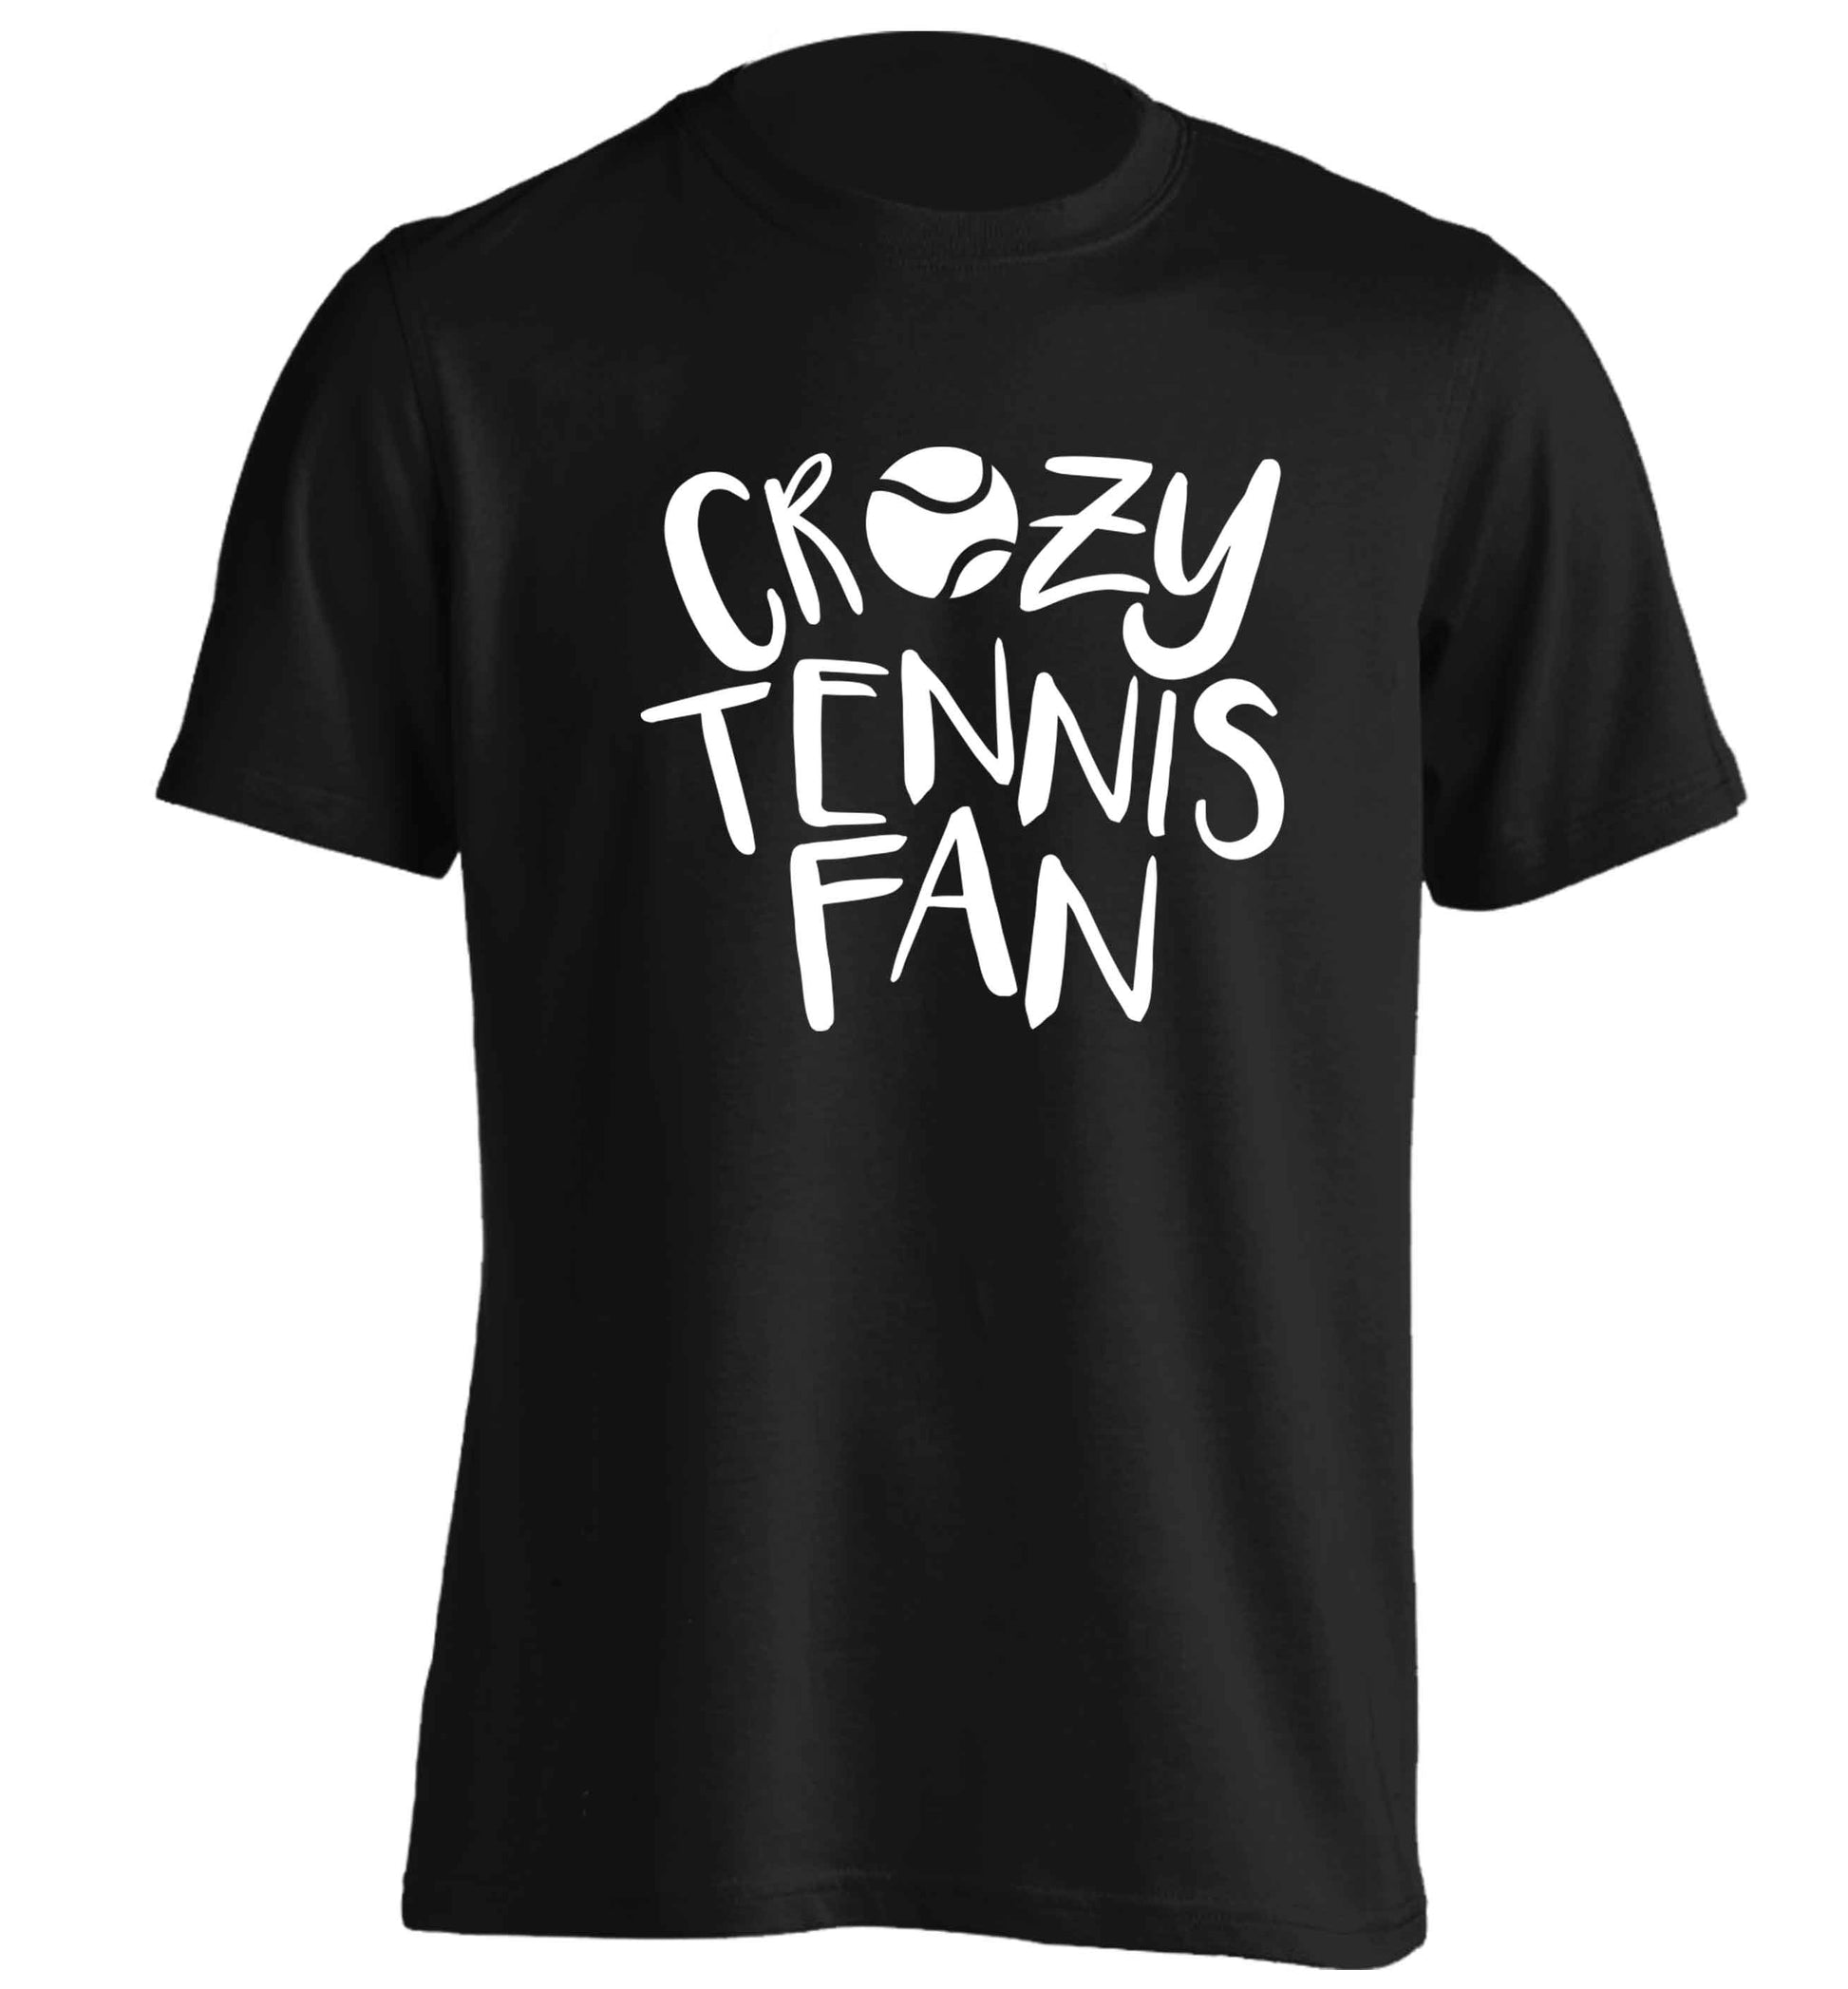 Crazy tennis fan adults unisex black Tshirt 2XL